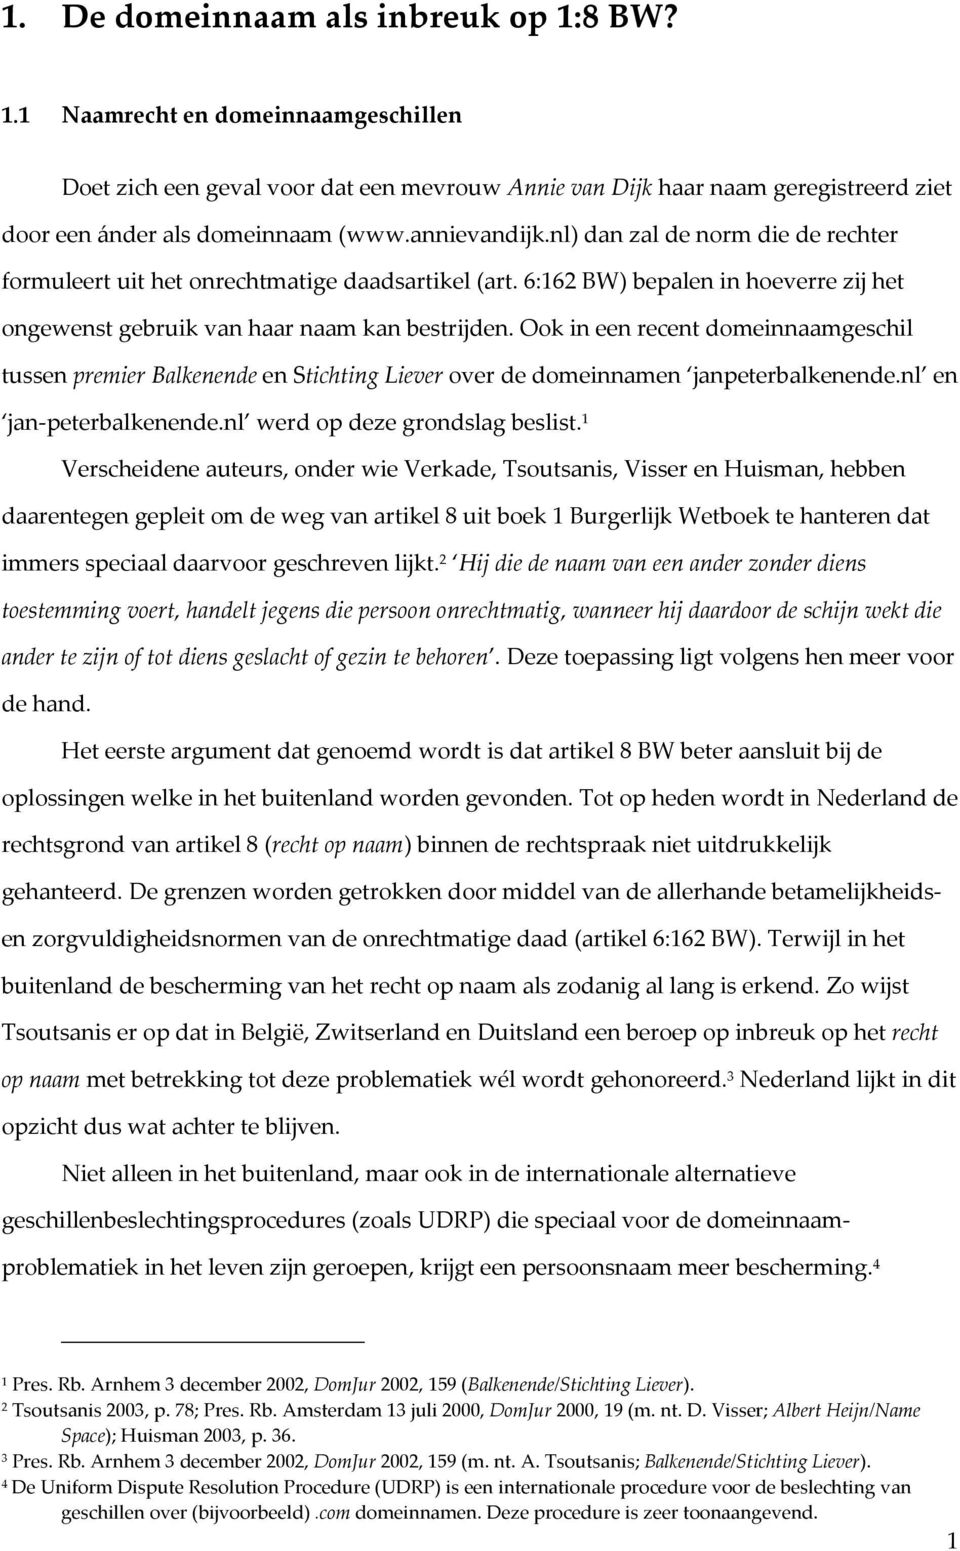 Ook in een recent domeinnaamgeschil tussen premier Balkenende en Stichting Liever over de domeinnamen janpeterbalkenende.nl en jan-peterbalkenende.nl werd op deze grondslag beslist.